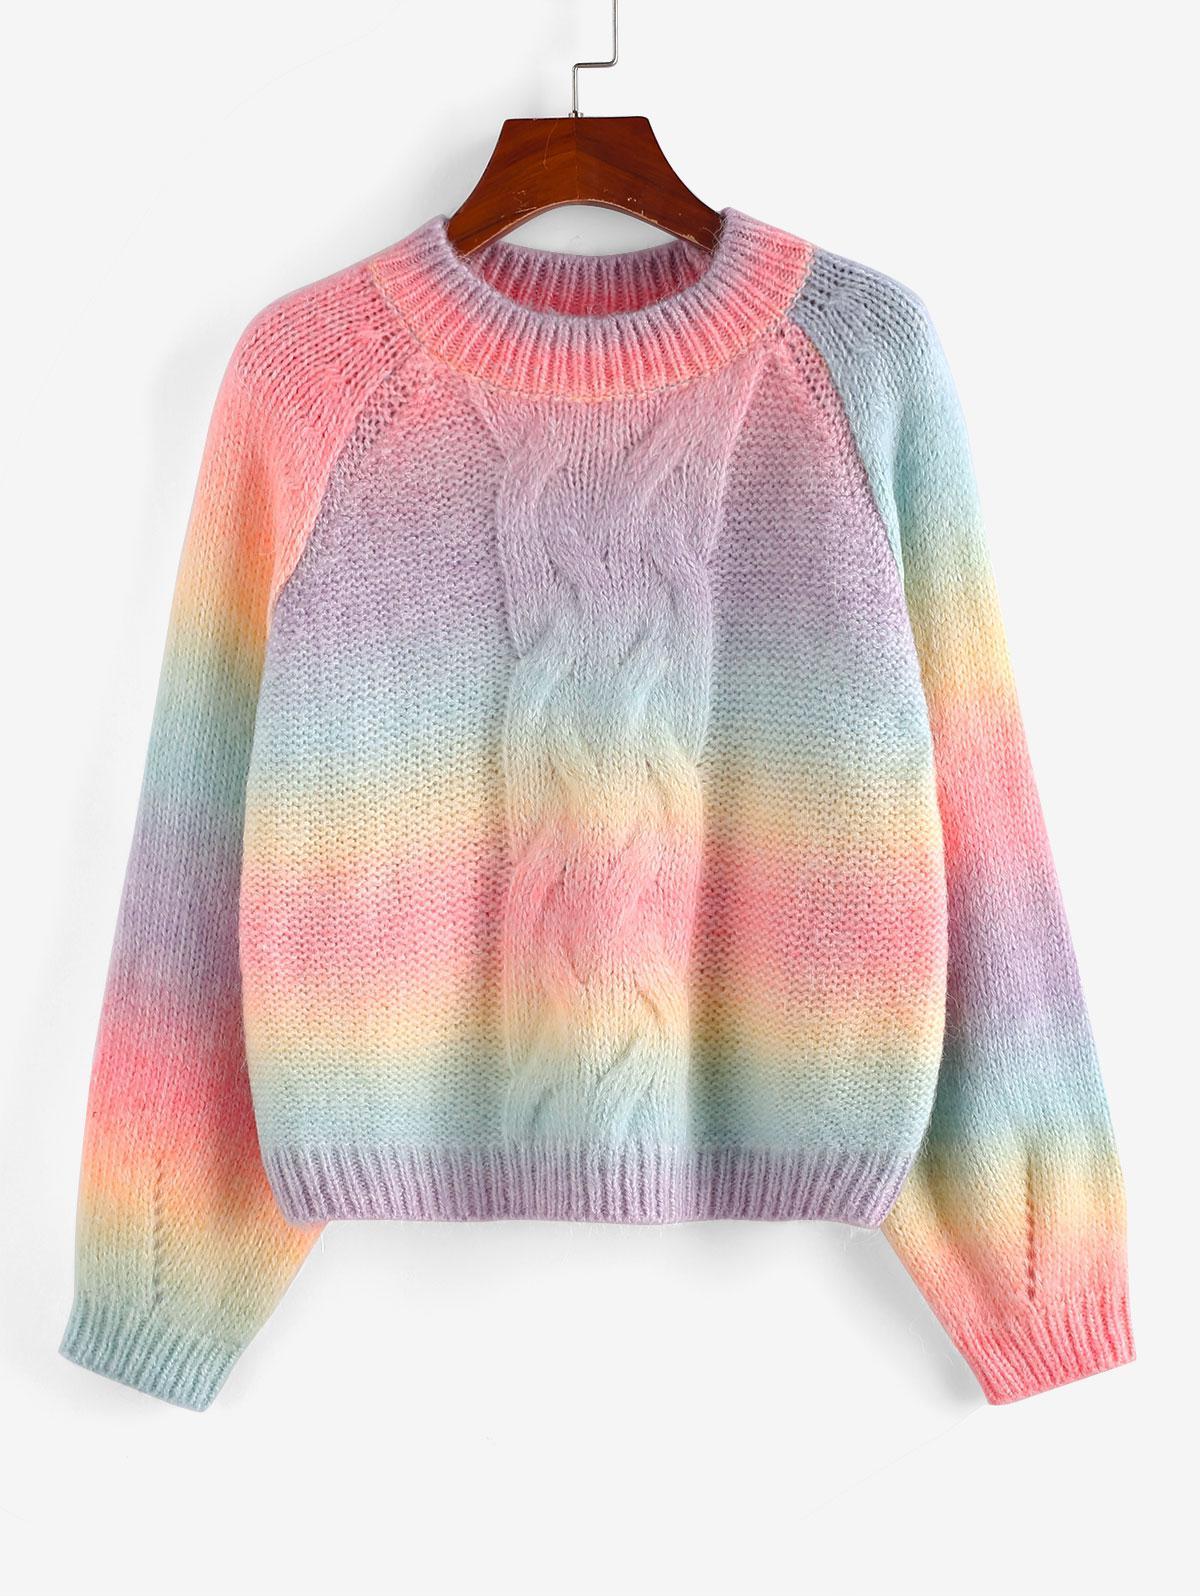 Zaful Raglanärmel regenbogen pullover fashion clothing | Lyst DE